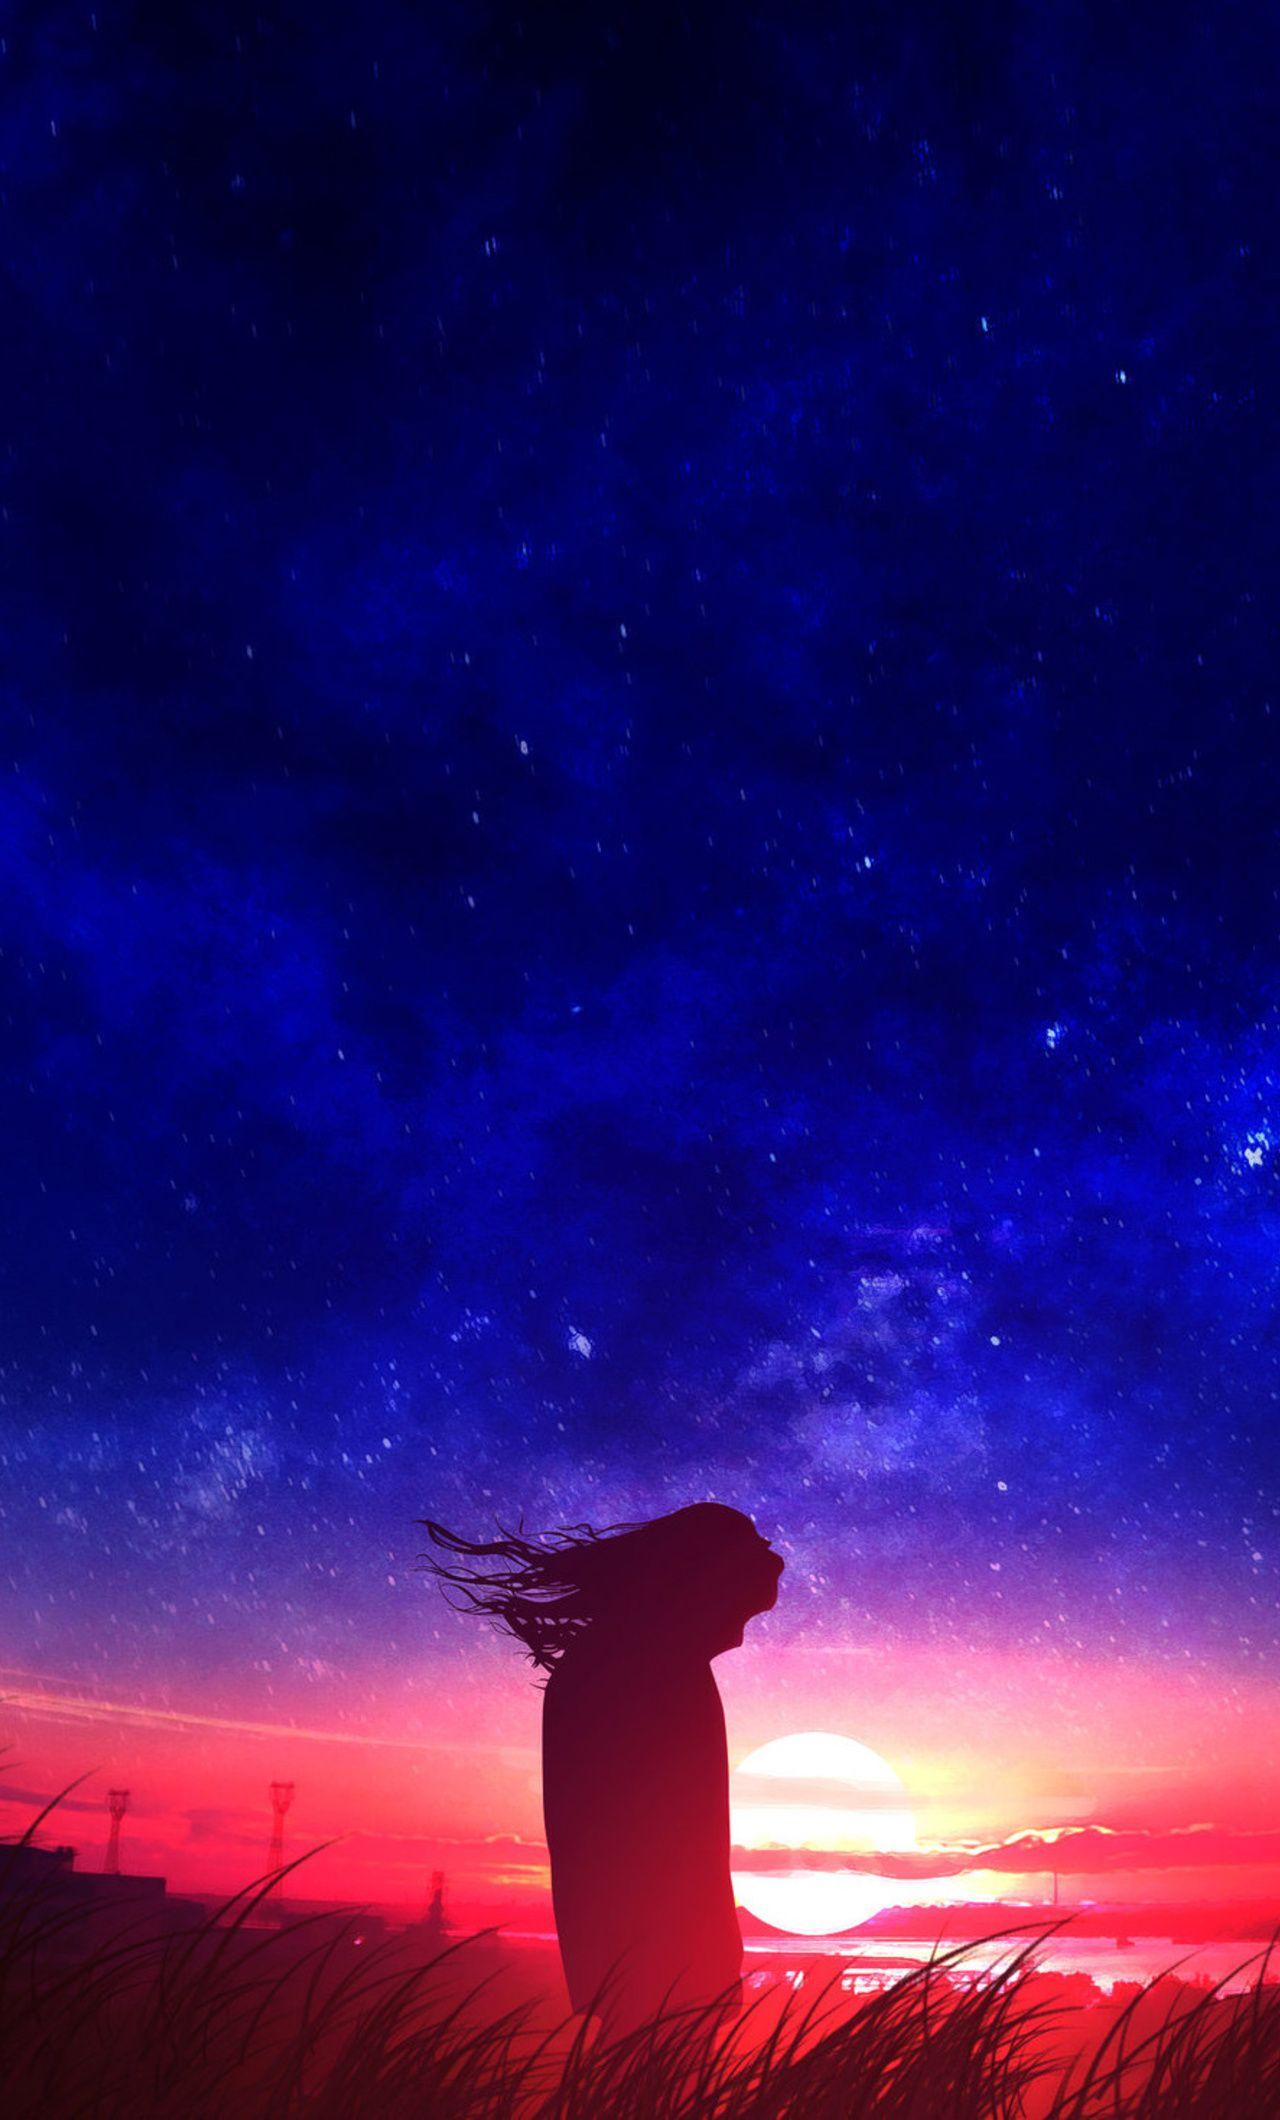 1280x2120 Anime Girl In Field Silhouette Sunset Hình nền iPhone HD 4k, Hình ảnh, Bối cảnh, Hình ảnh và Hình ảnh